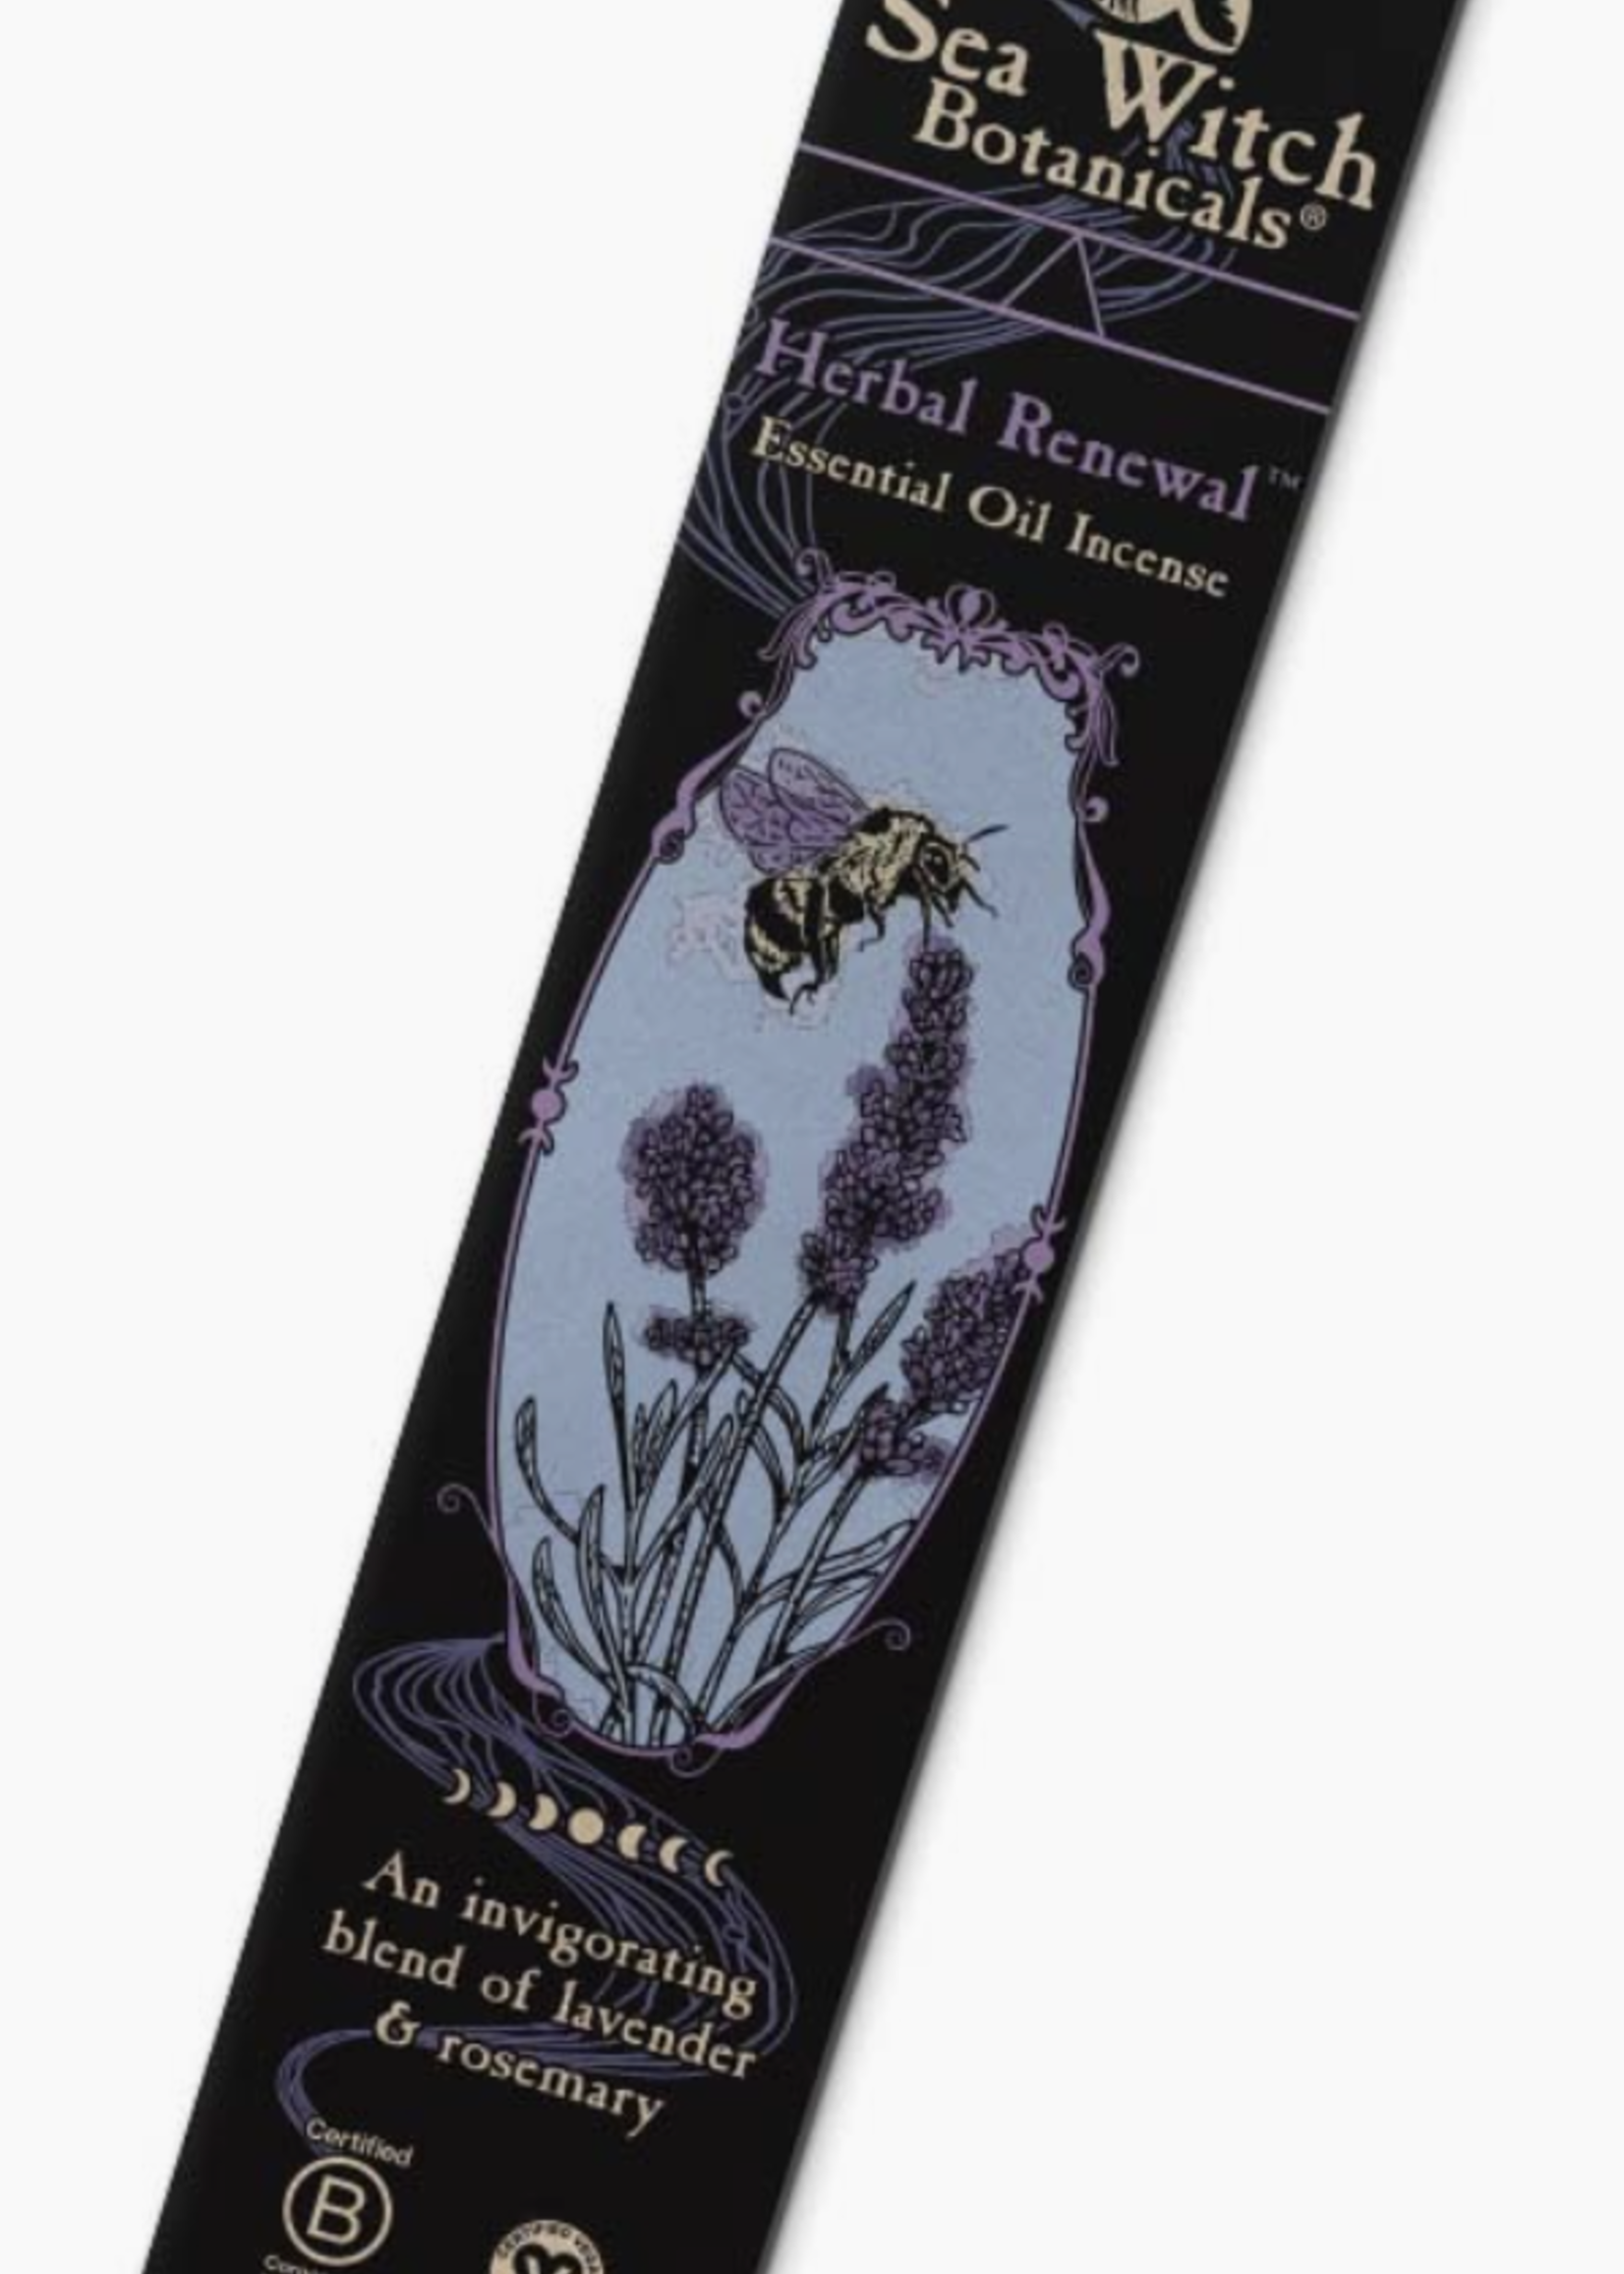 Hemlock Park Stick Incense - Herbal Renewal